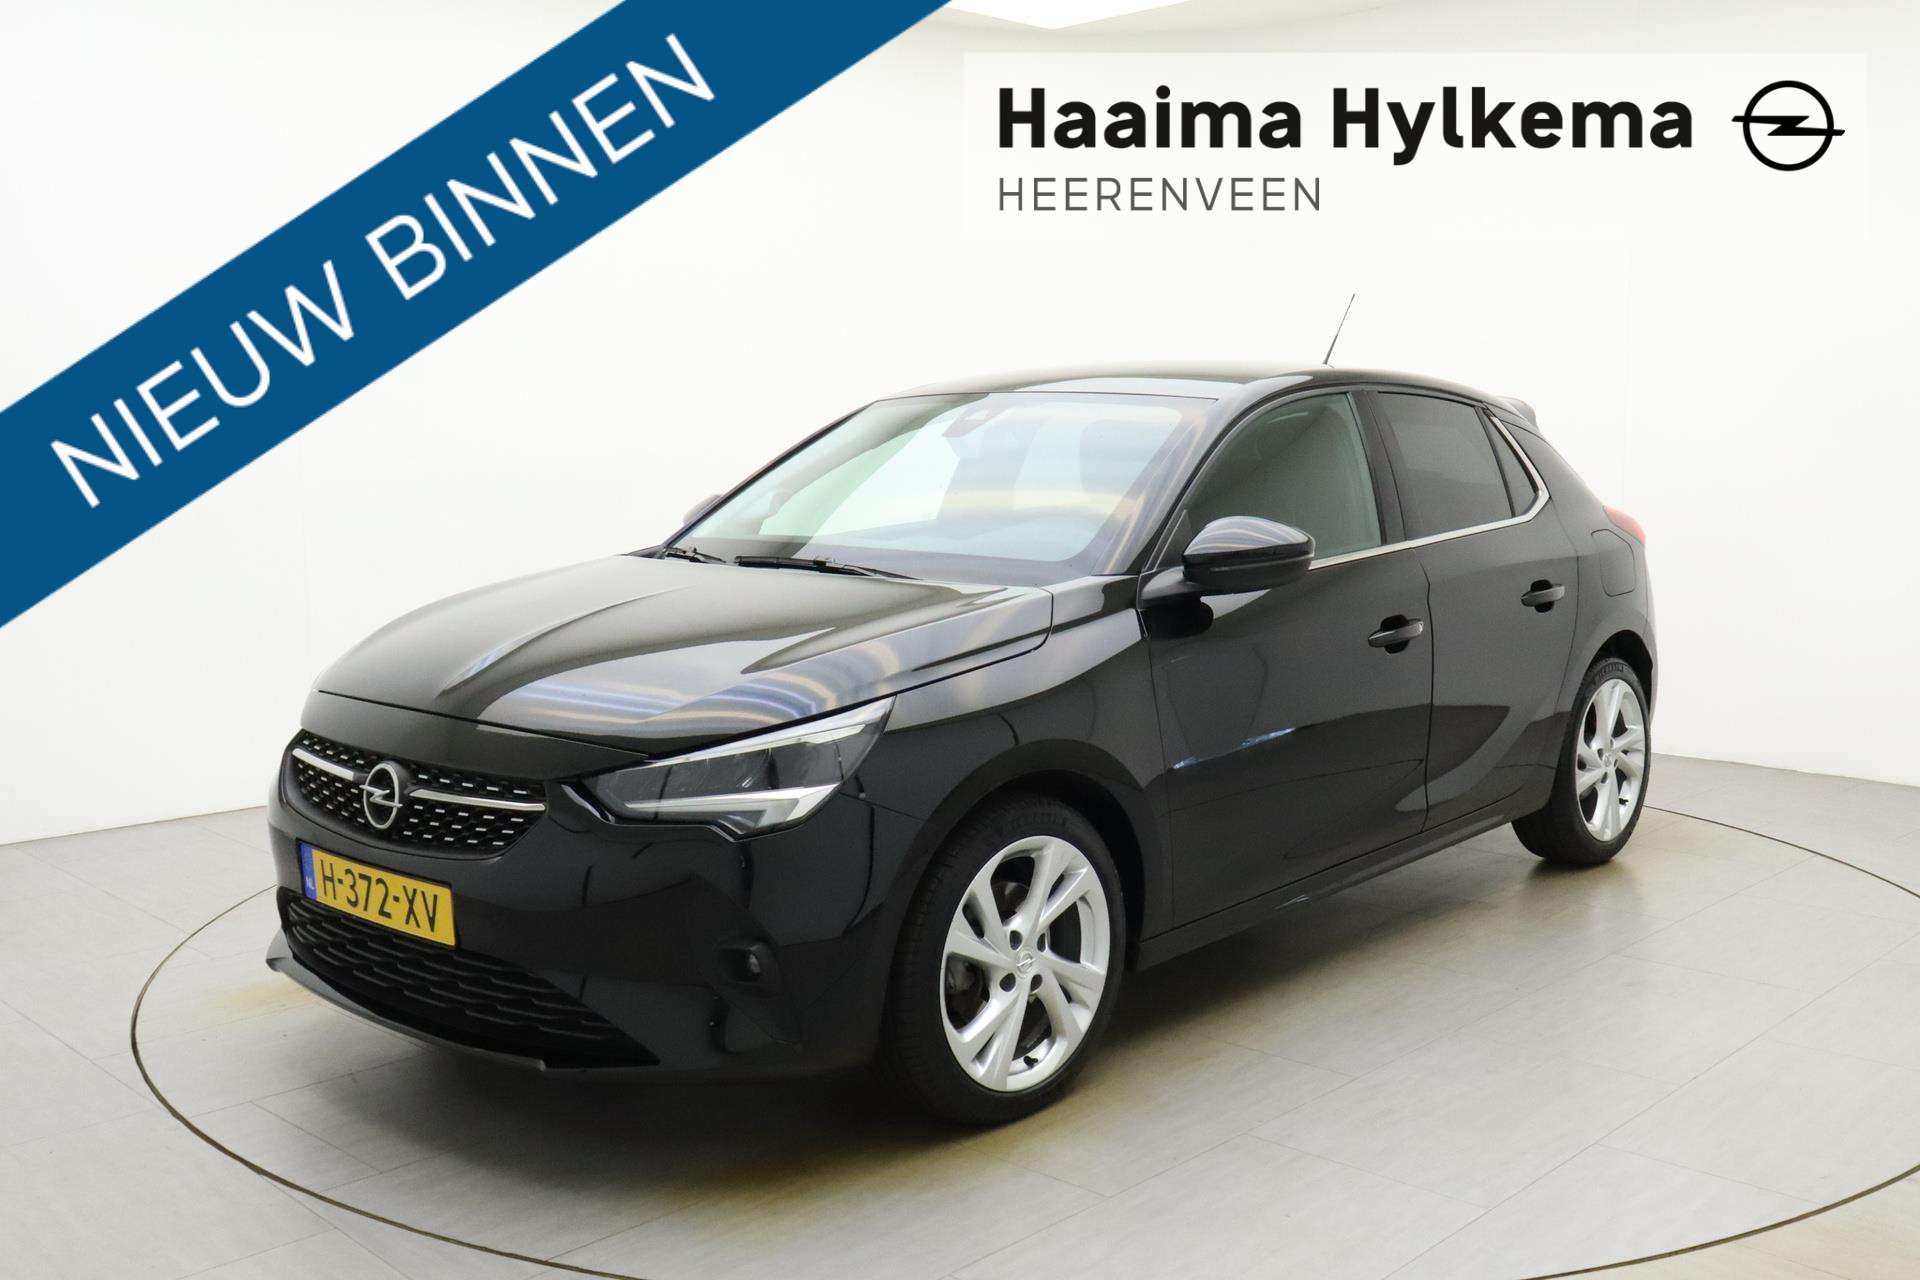 Opel Corsa Compact in Black used in HEERENVEEN for € 20,950.-